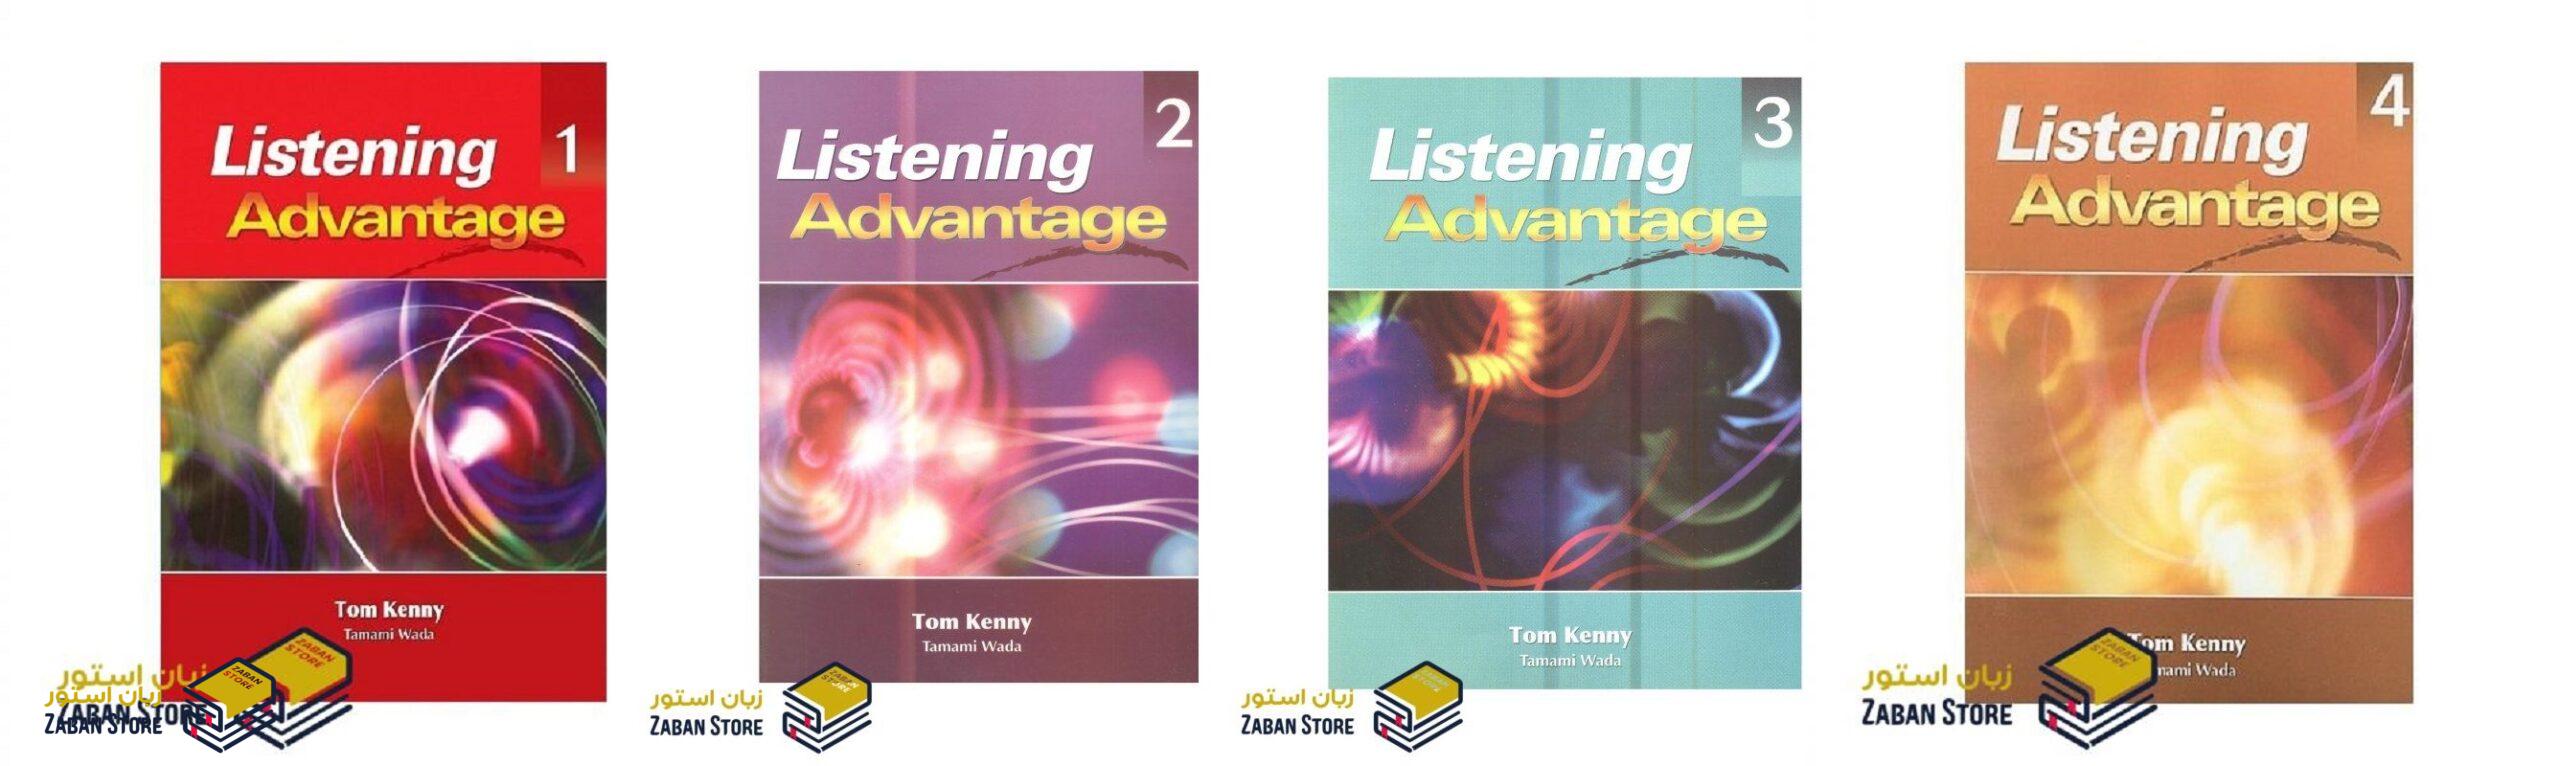 خرید کتاب زبان | کتاب زبان اصلی | Listening Advantage | کتاب لیسنینگ ادونتیج